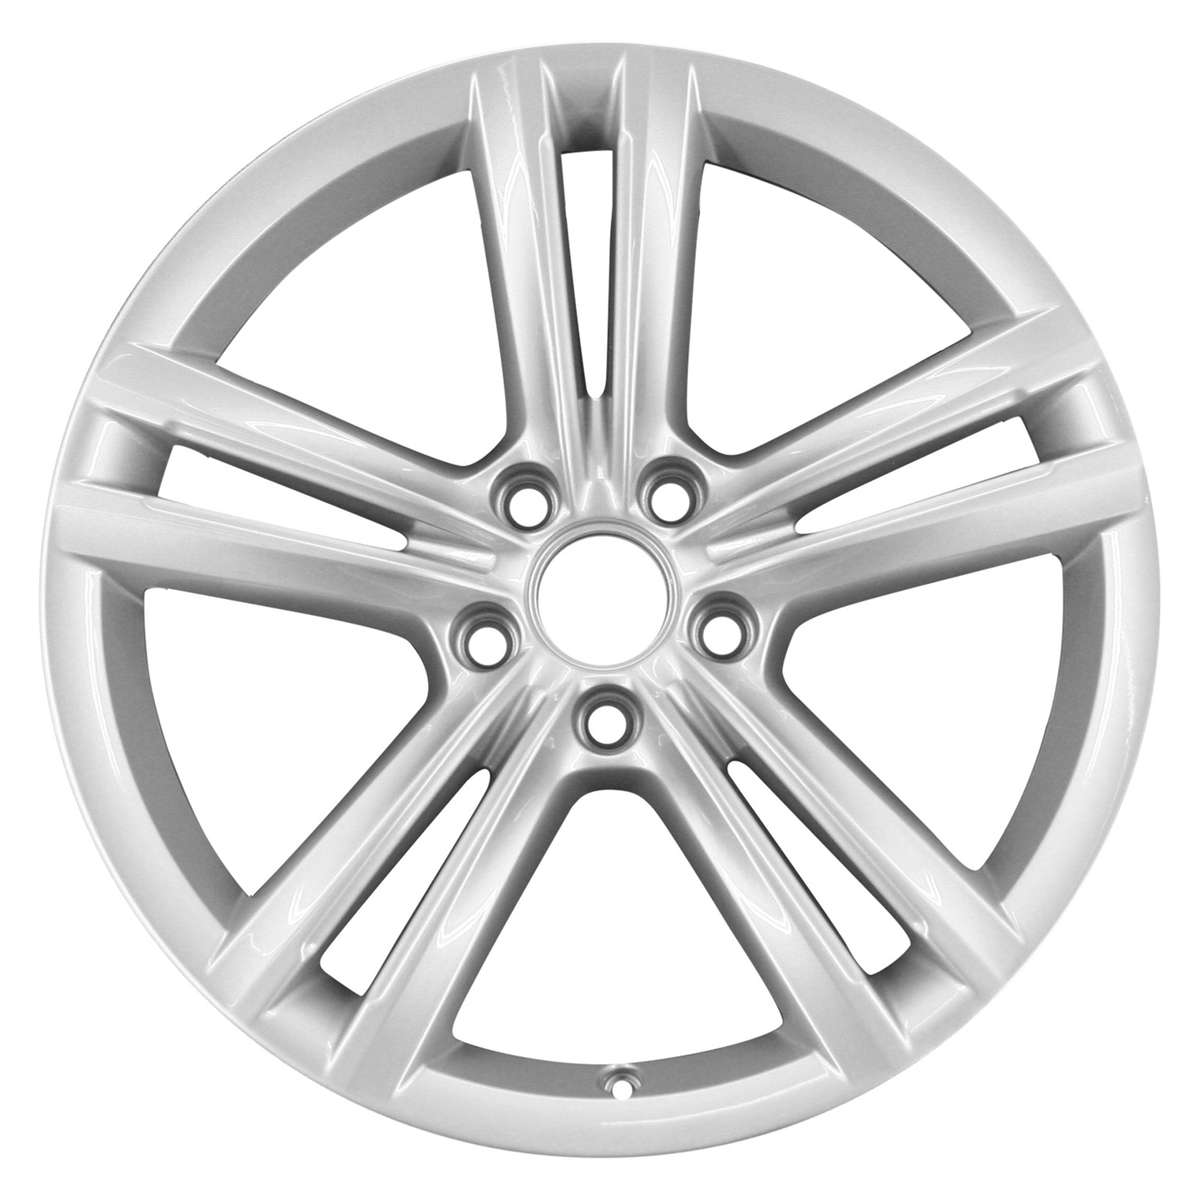 2014 Volkswagen Passat New 18" Replacement Wheel Rim RW69929S